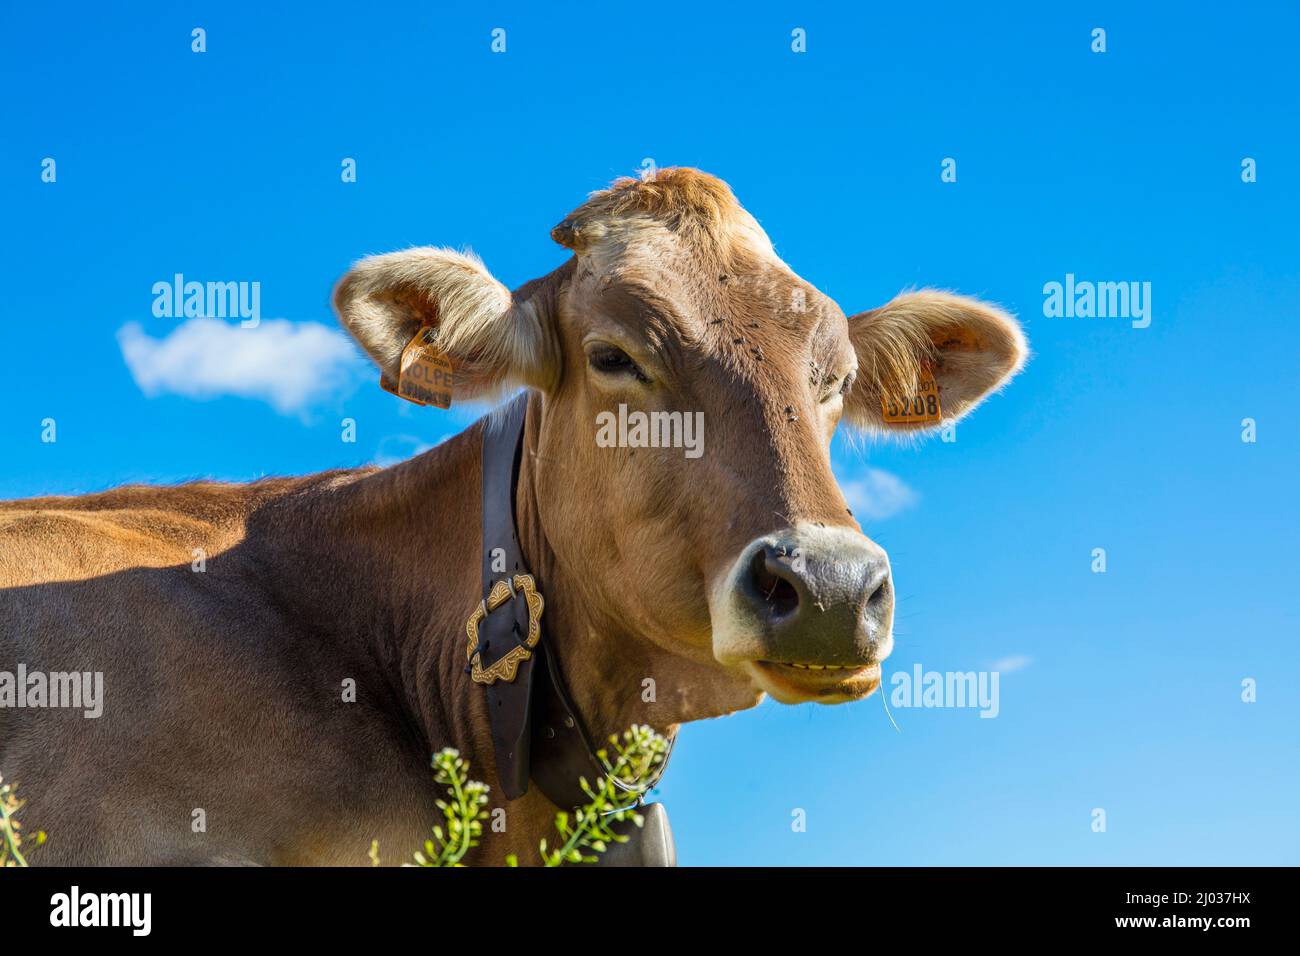 Portrait of a cow, Grande Est, Parco Naturale Veglia-Devero, Val d'Ossola, V.C.O. (Verbano-Cusio-Ossola), Piedmont, Italy, Europe Stock Photo